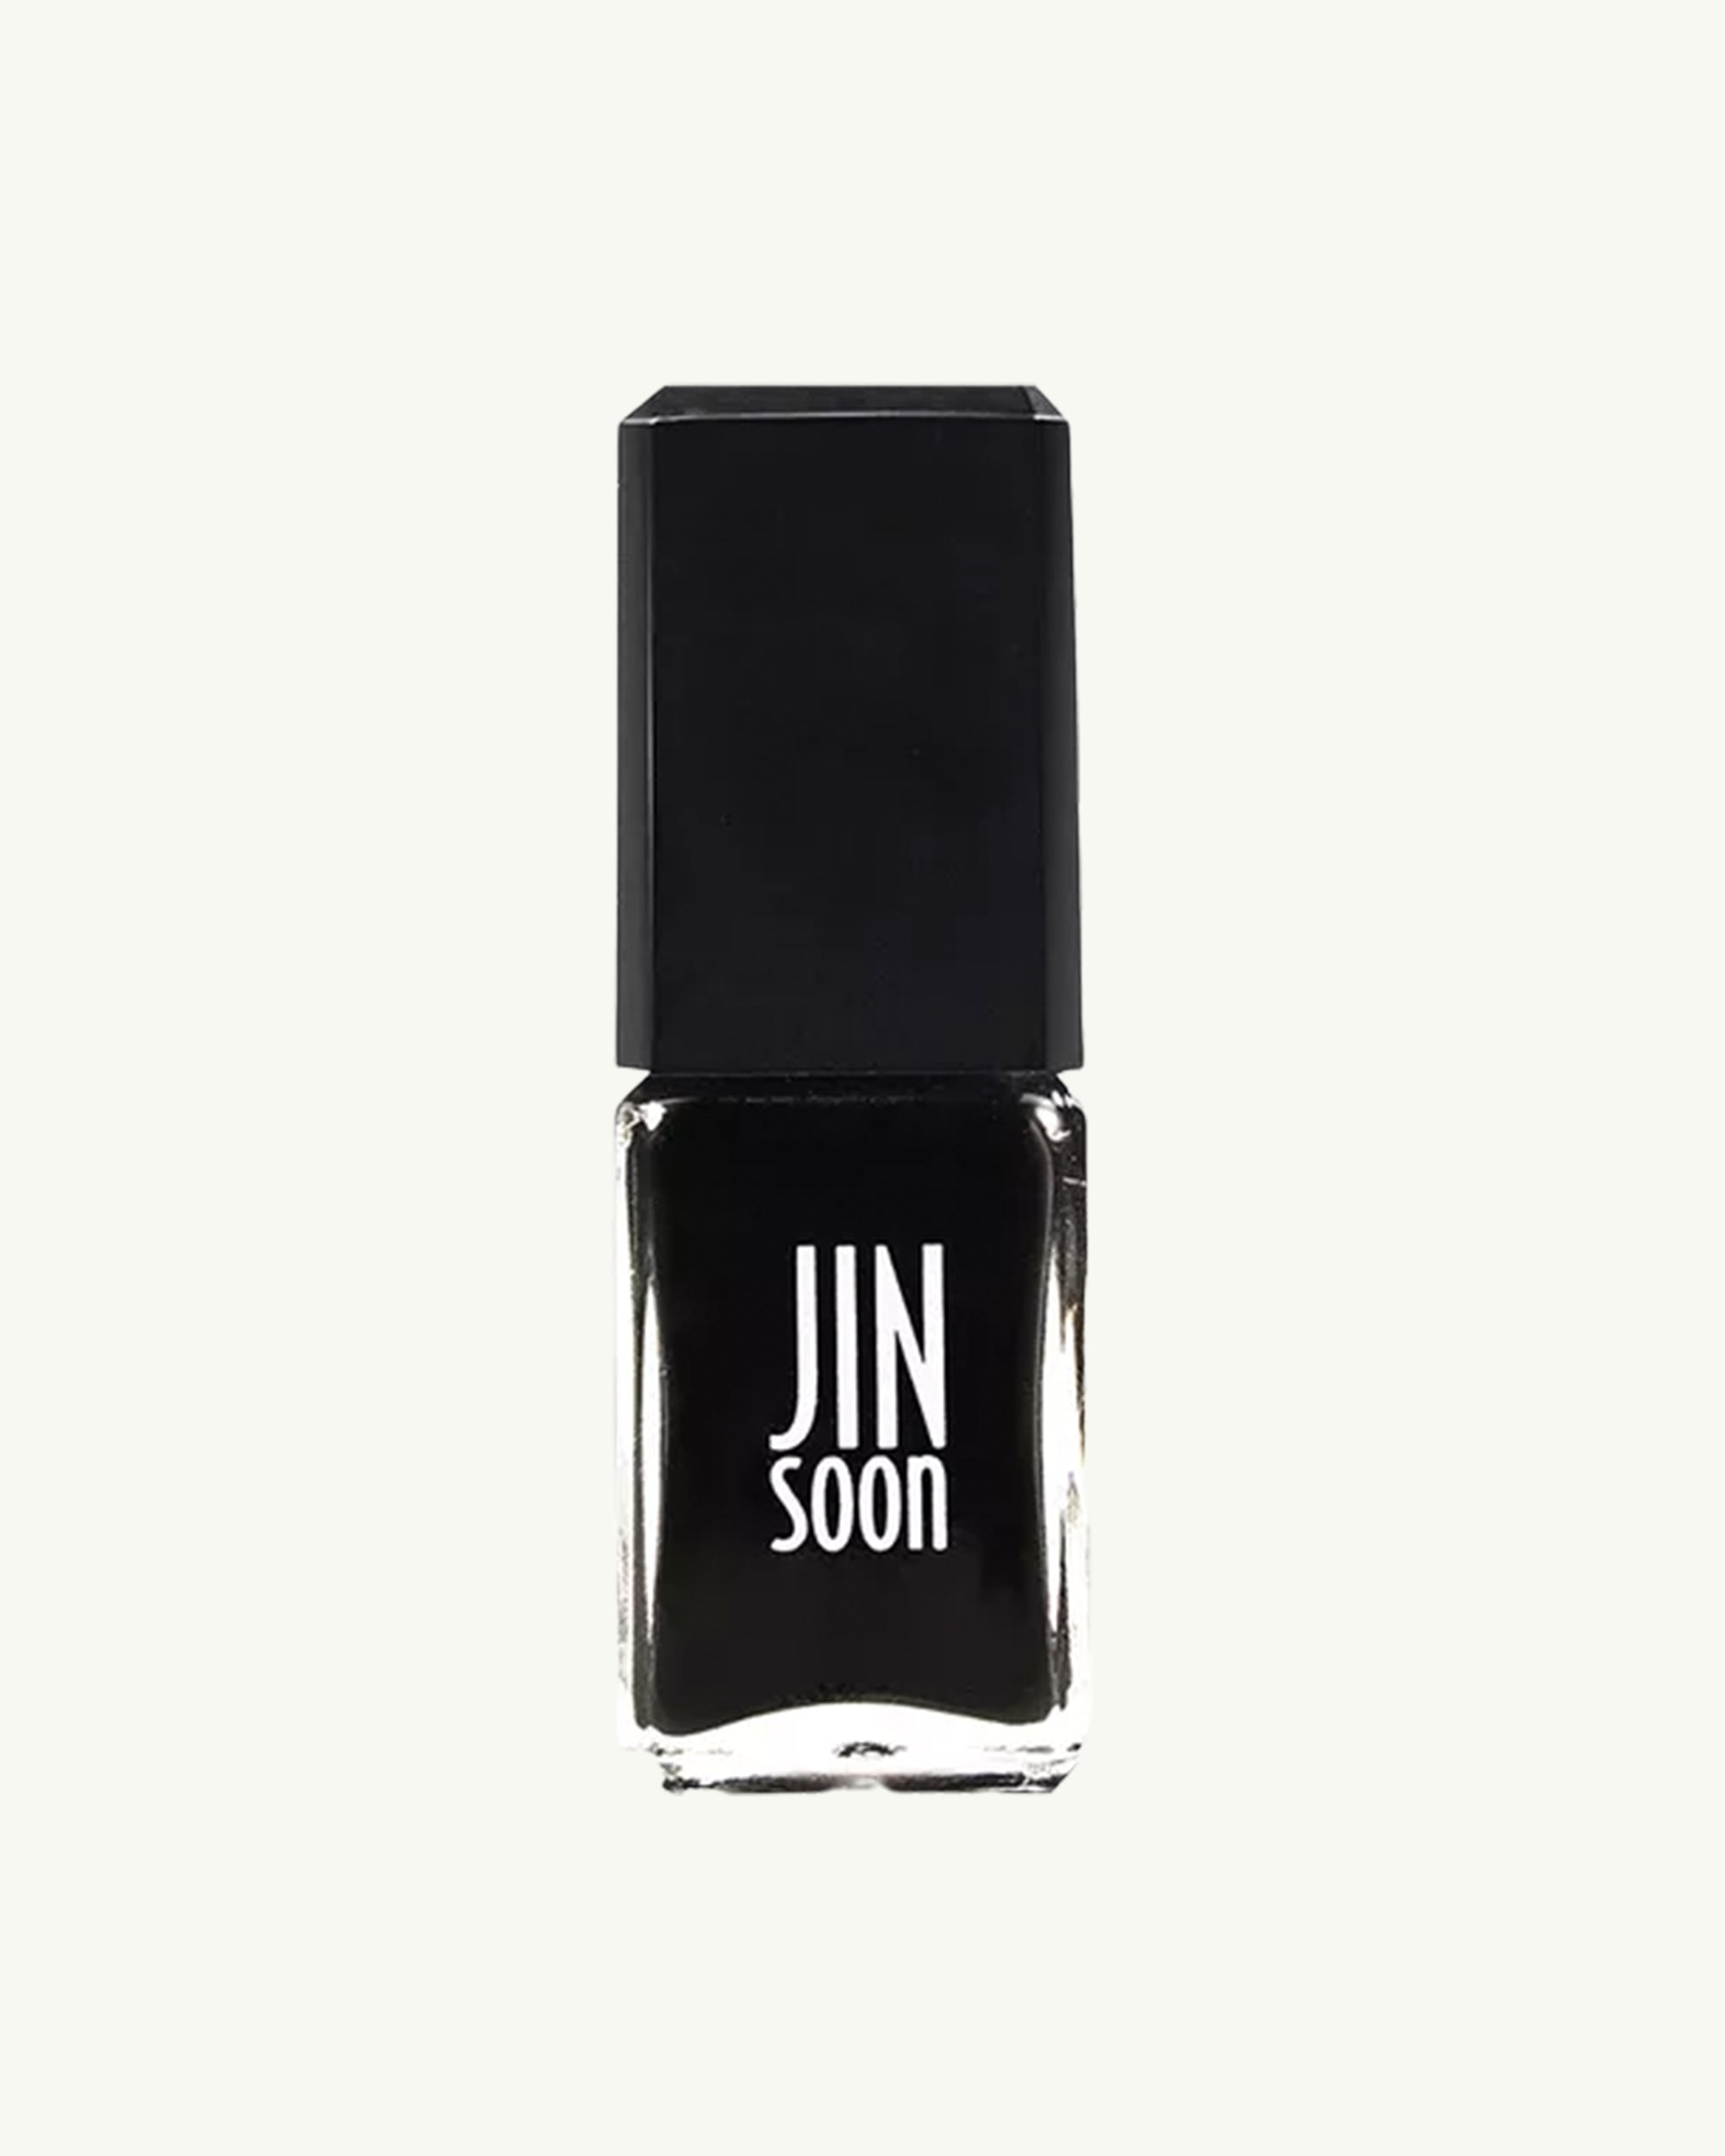 JINsoon - Absolute Black